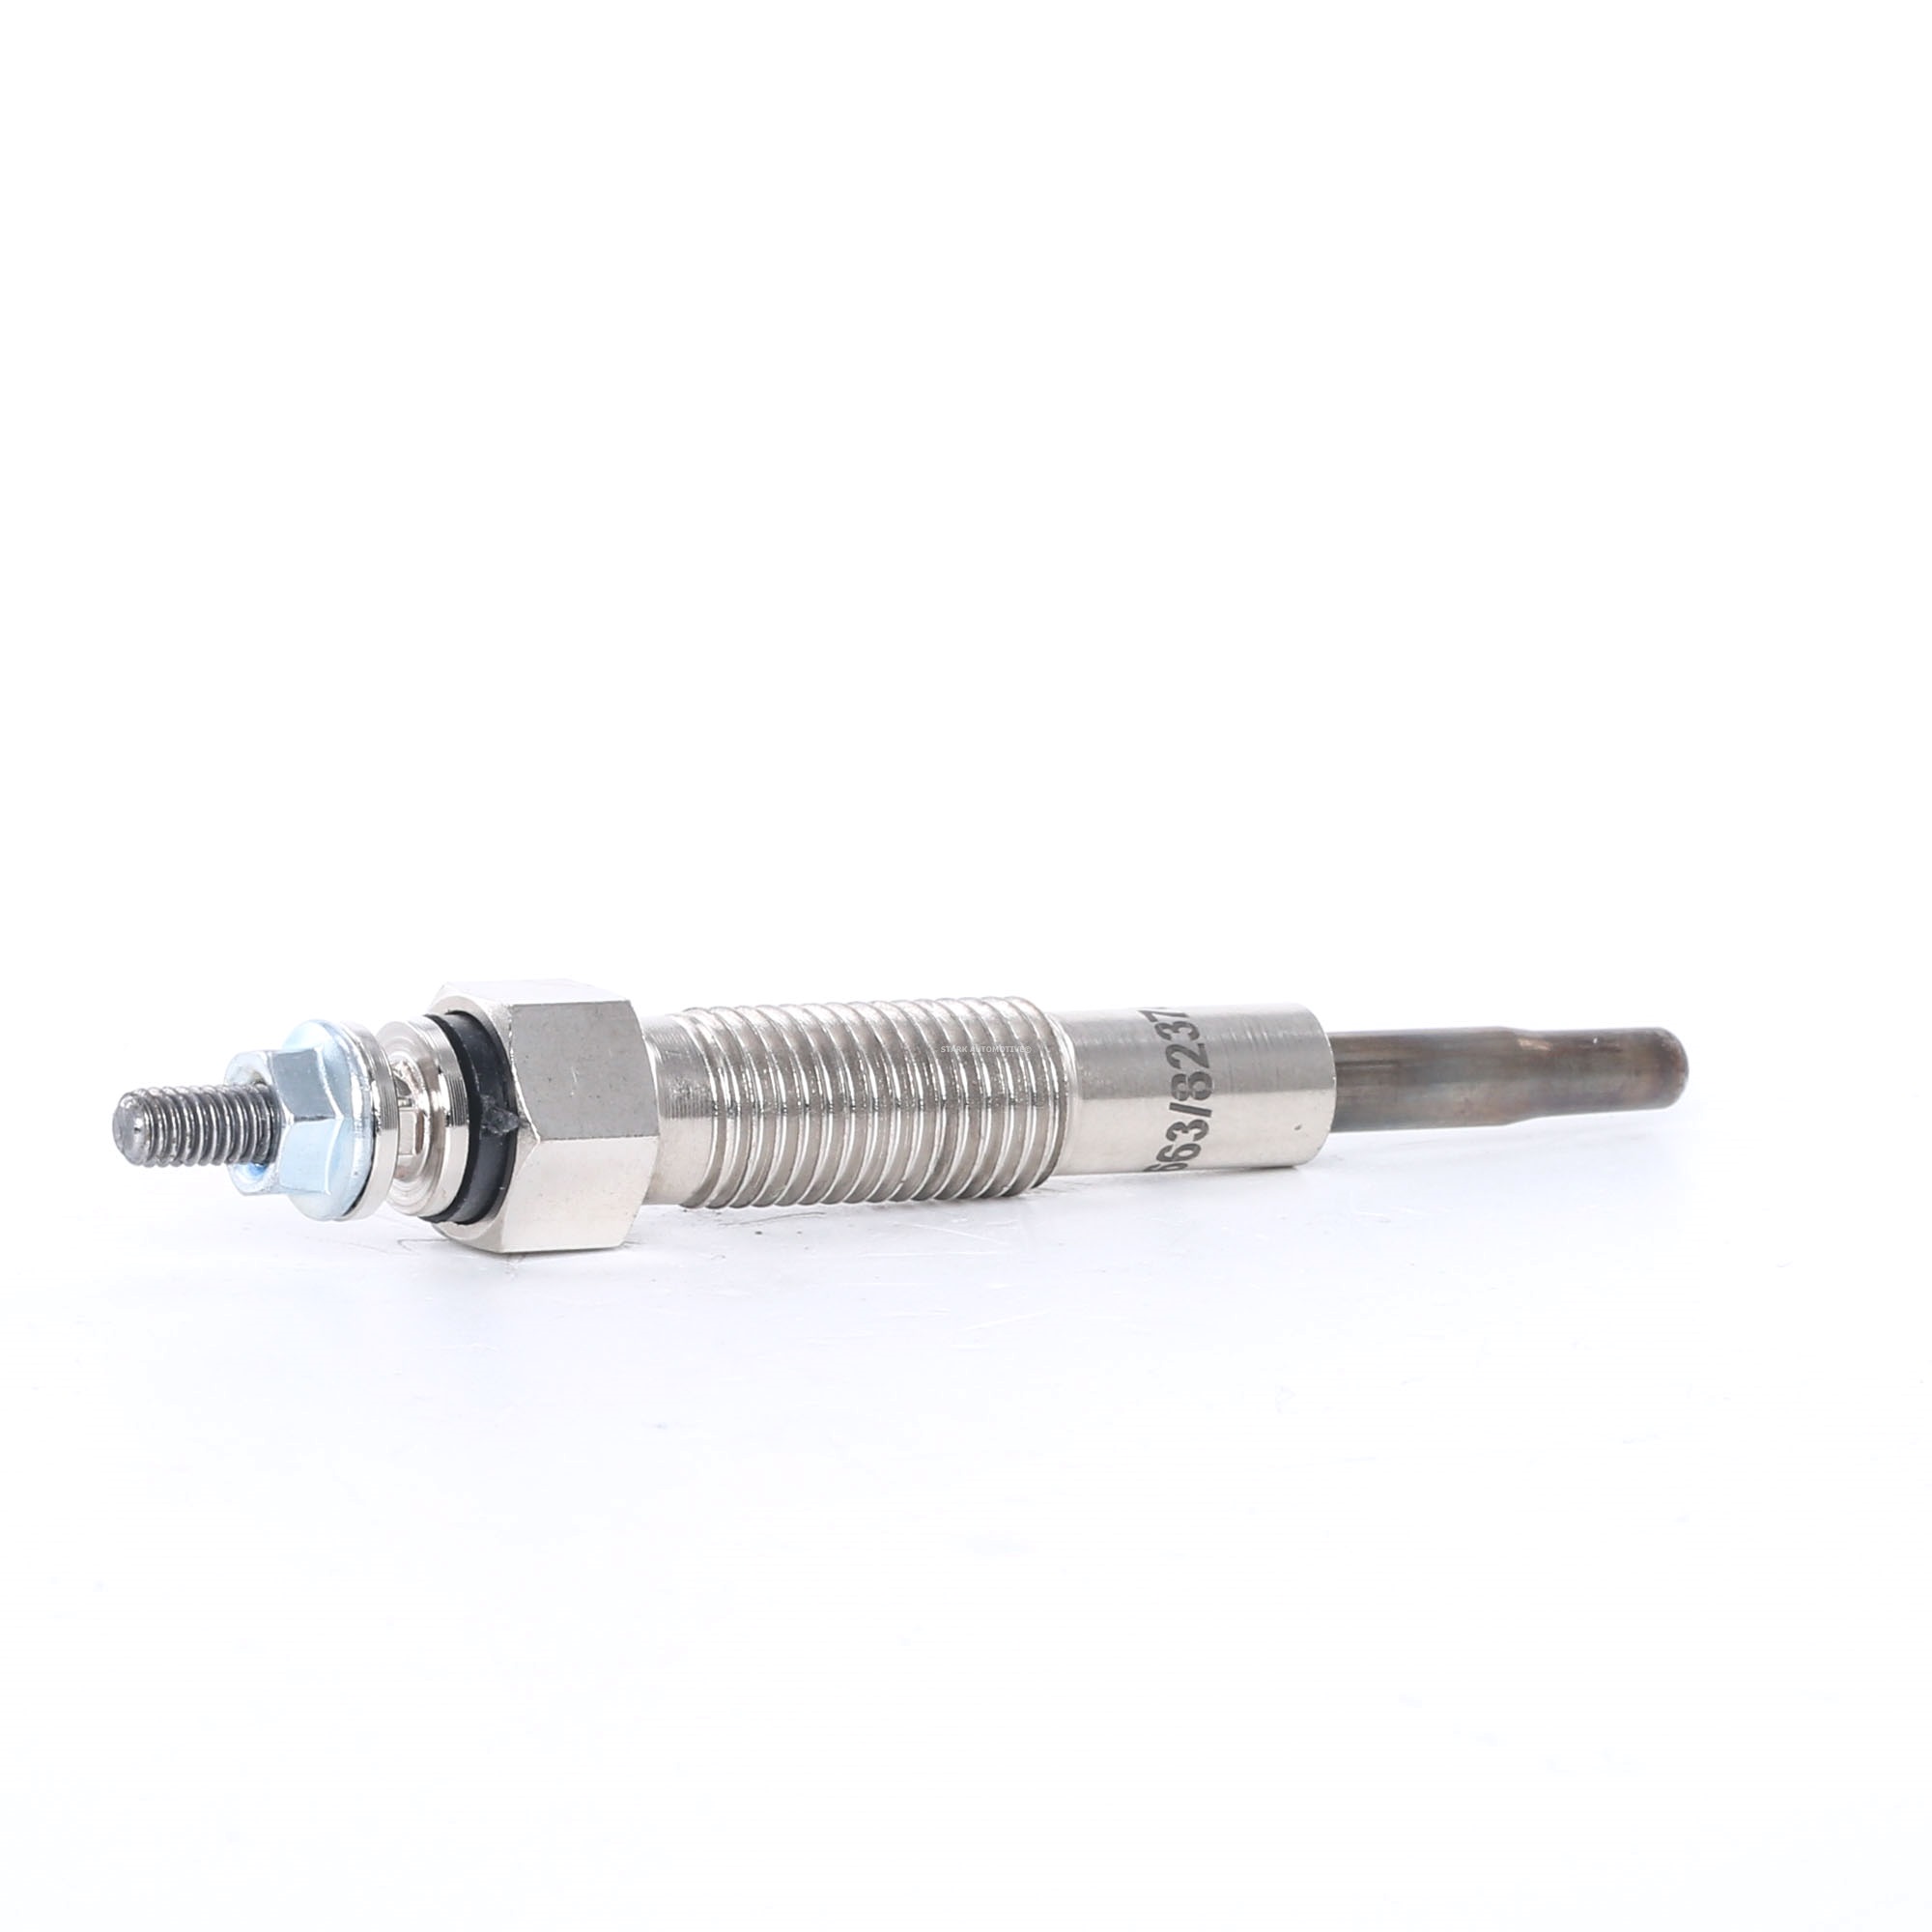 Diesel glow plugs STARK 11V M10x1.25, Length: 81,4, 18,5 mm - SKGP-1890038